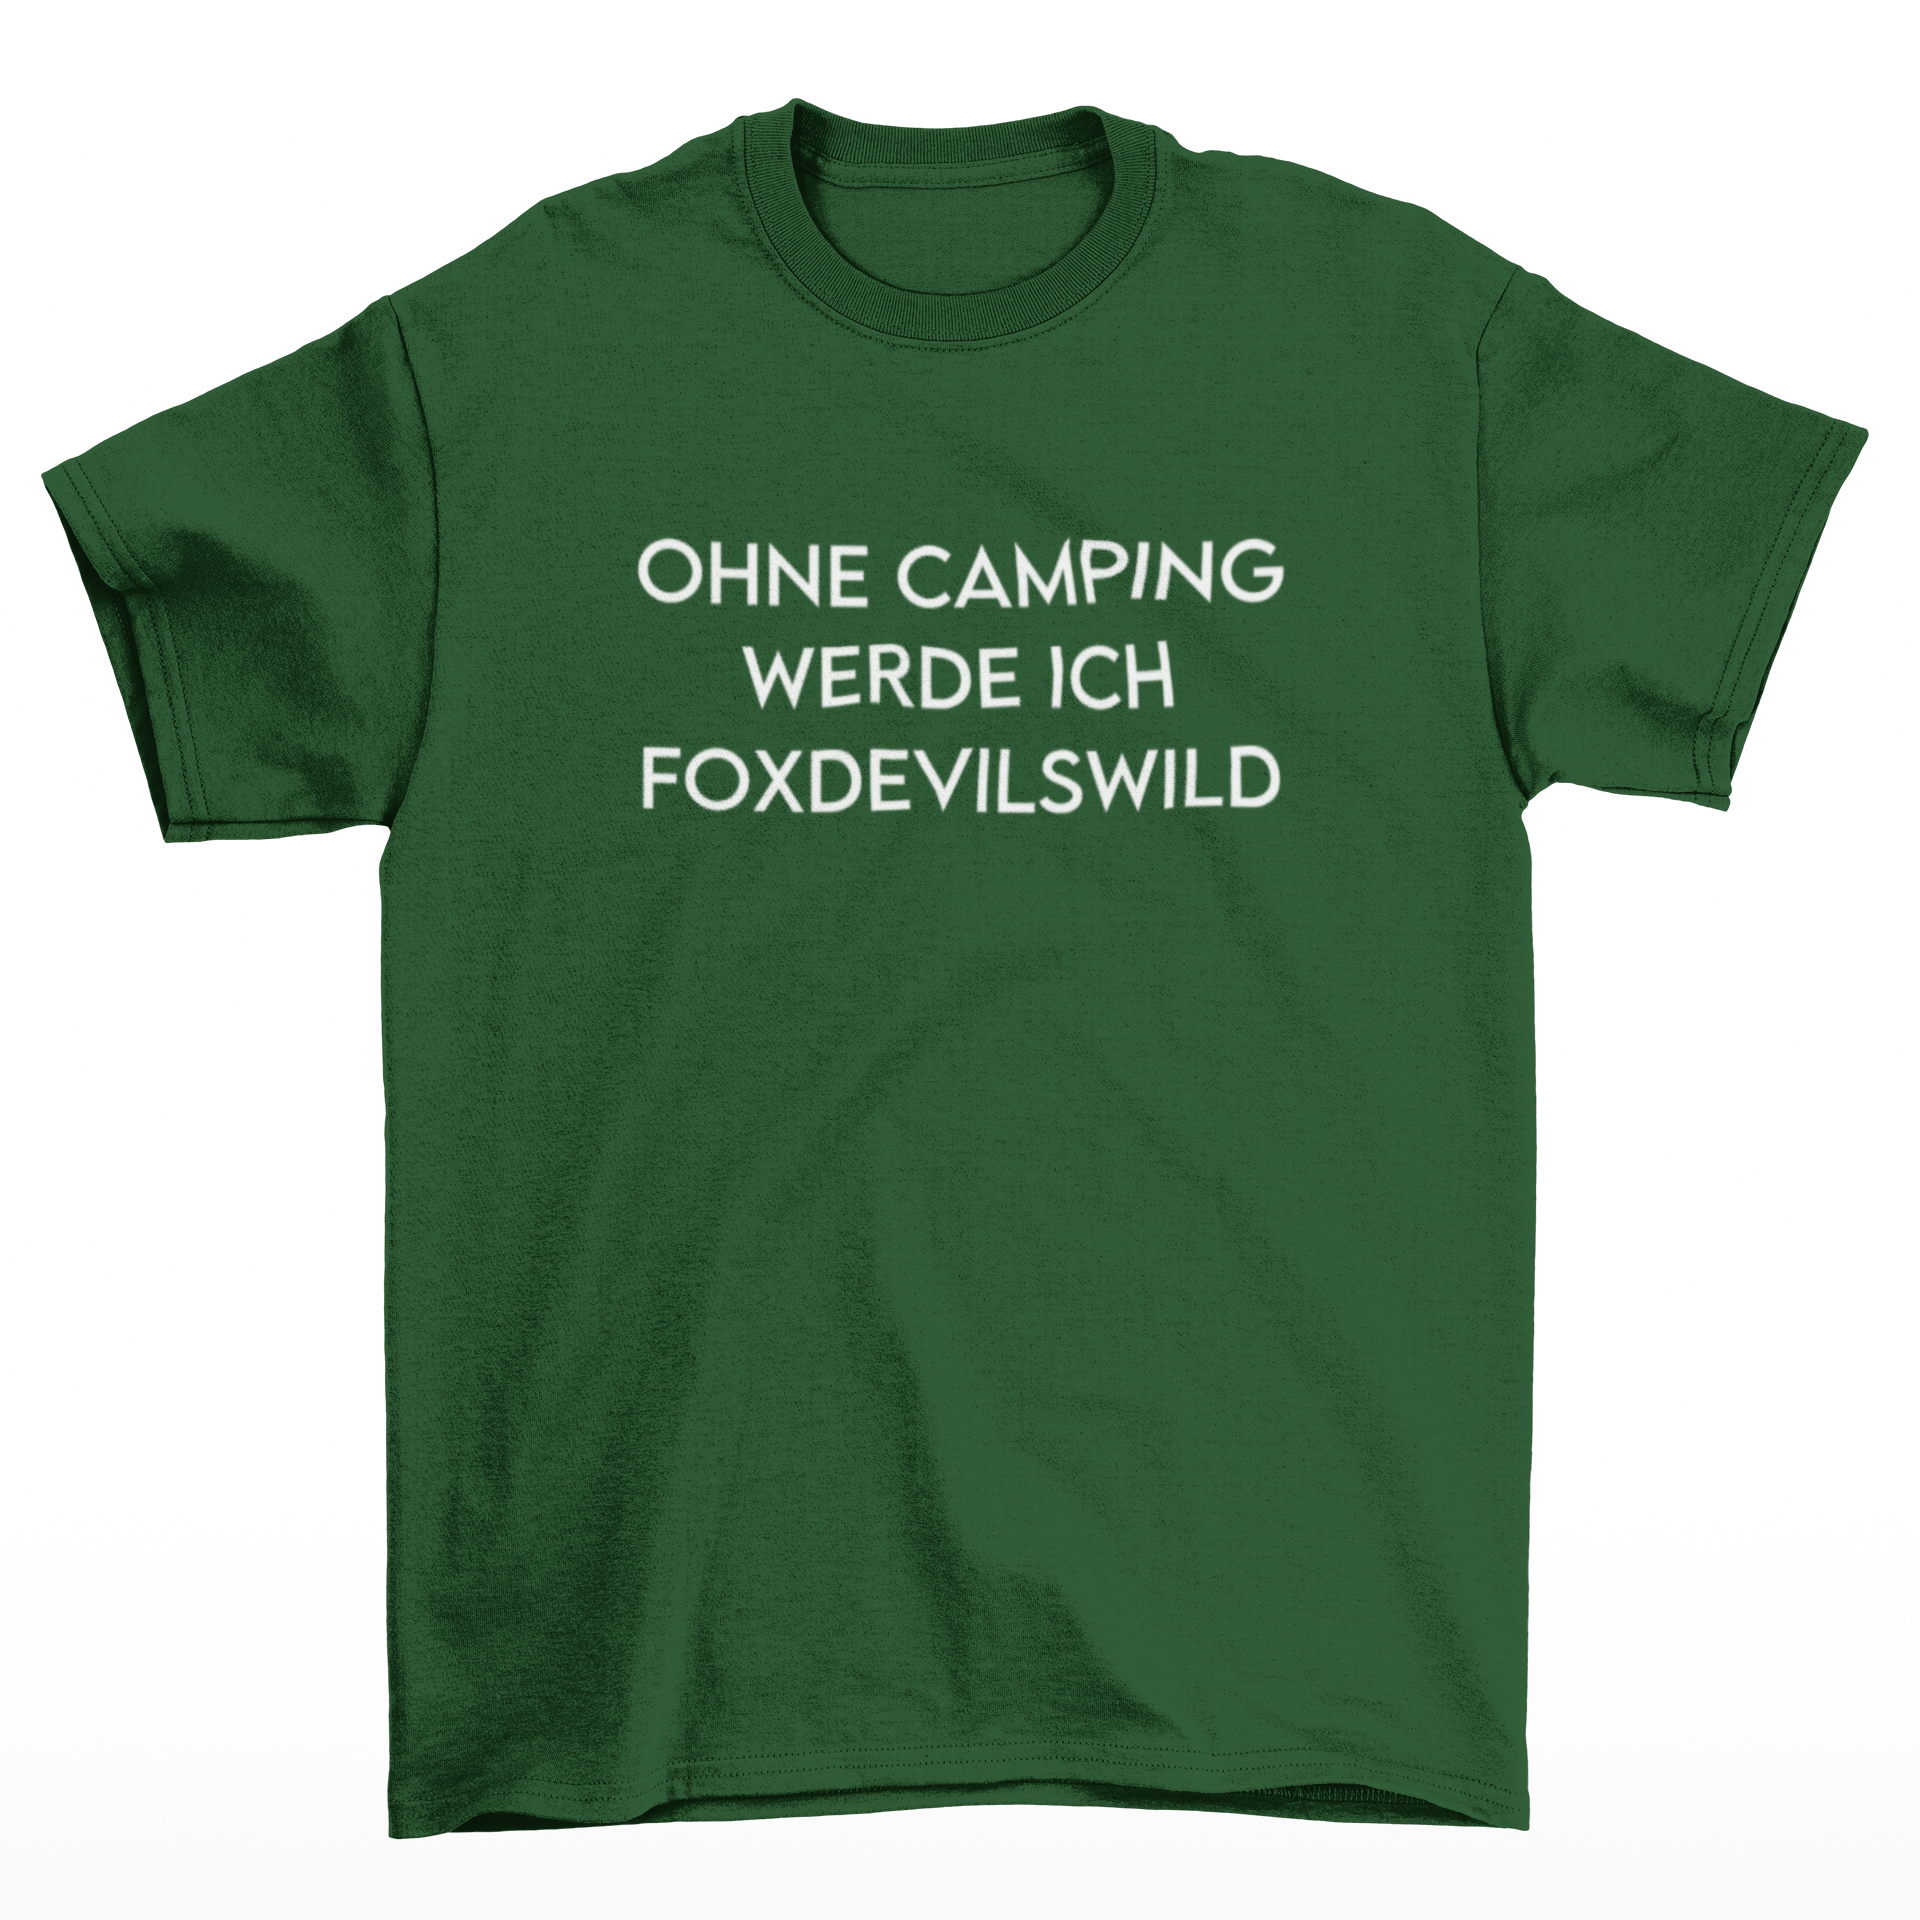 Ohne Camping werde ich foxdevilswild  - T-Shirt